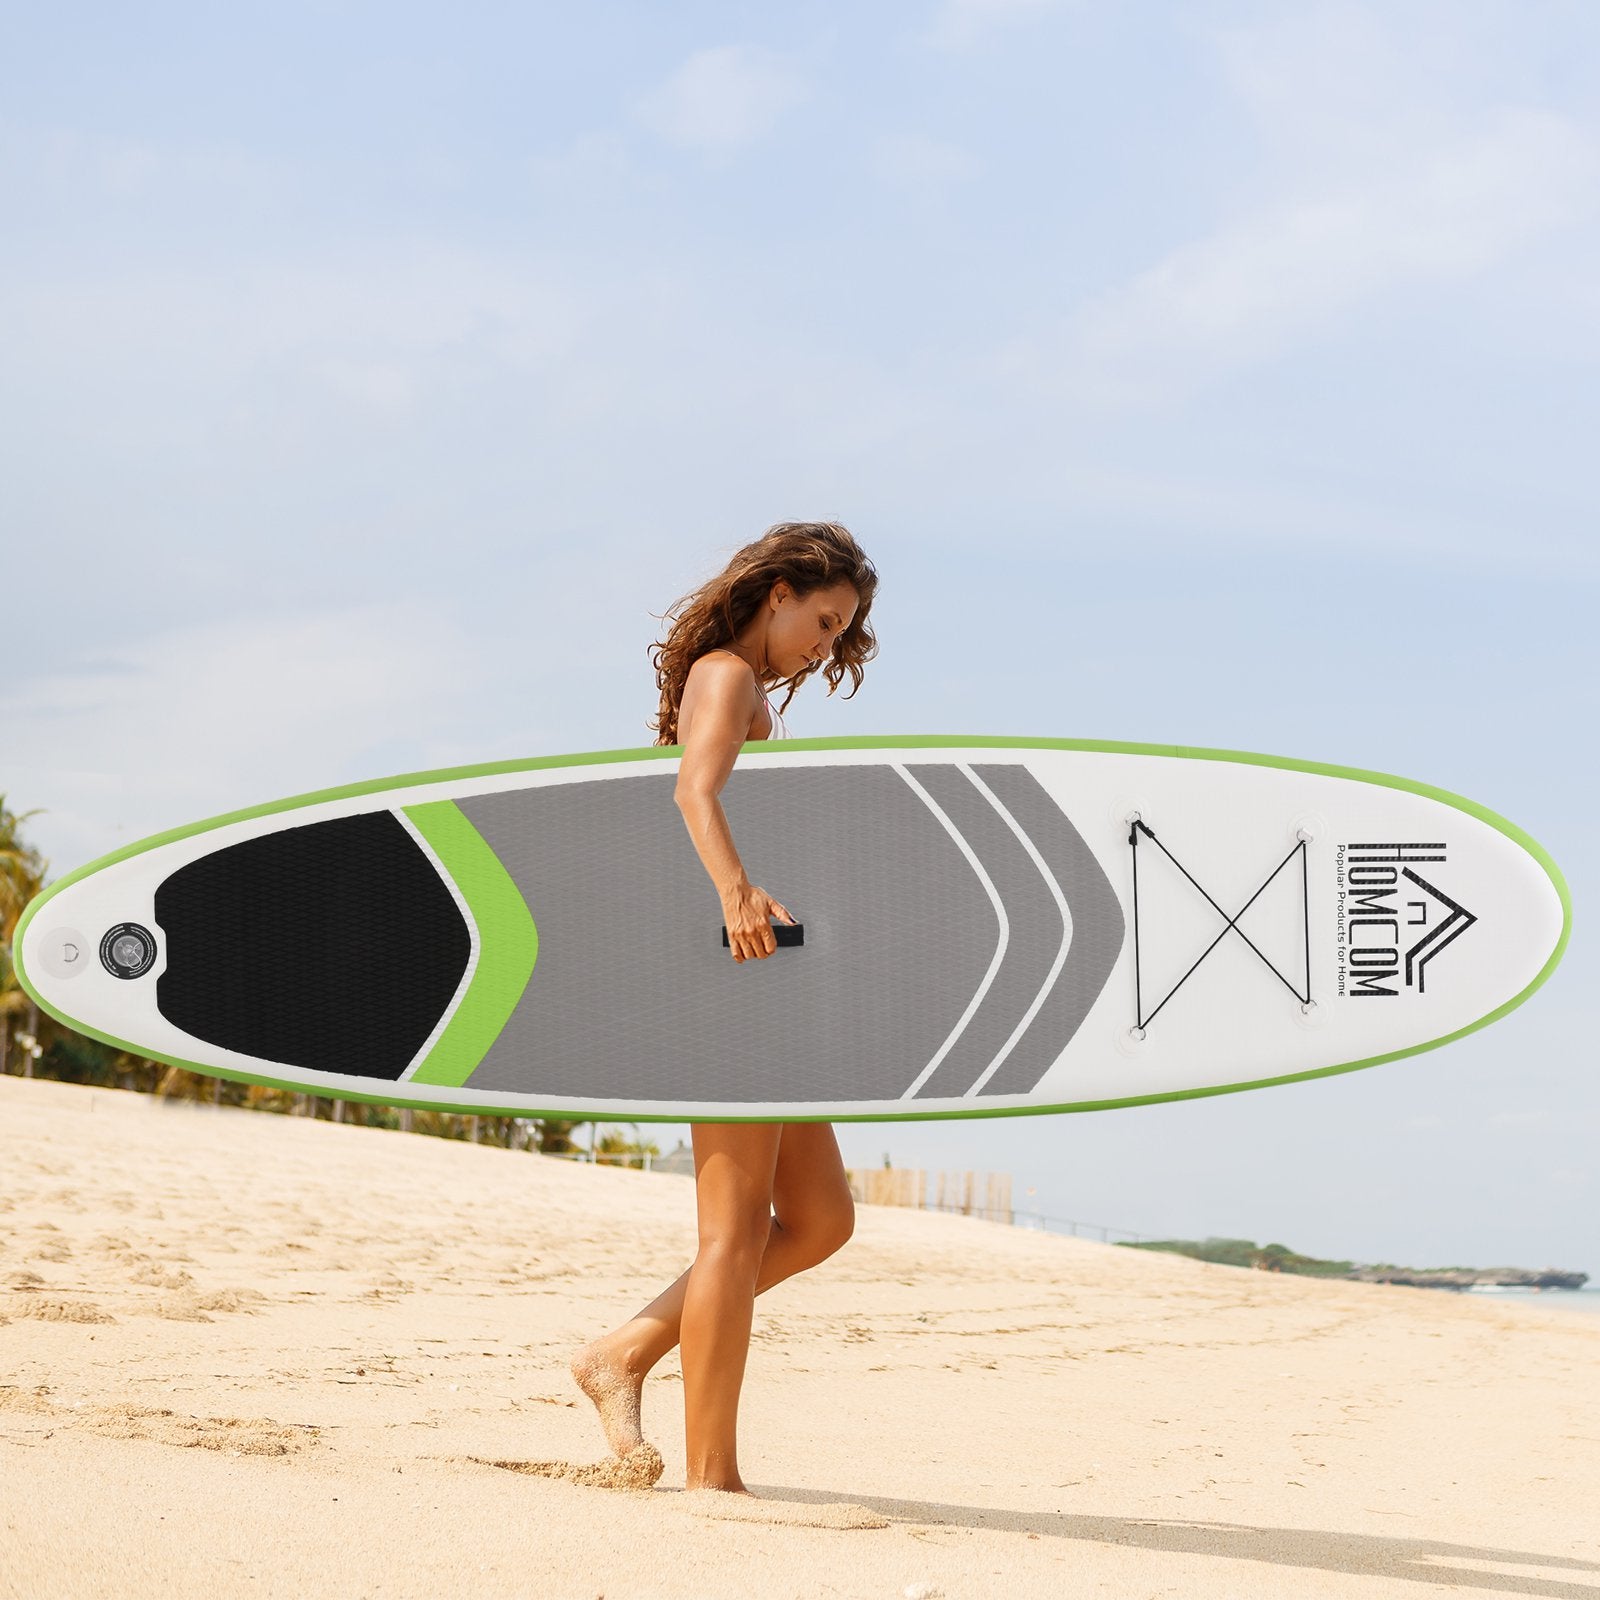 EASYCOMFORT Tavola SUP Gonfiabile con Accessori Inclusi, Tavola da Surf  Stand Up Paddle Board per Adulti e Teenager, 305x75x15cm Verde e Bianco